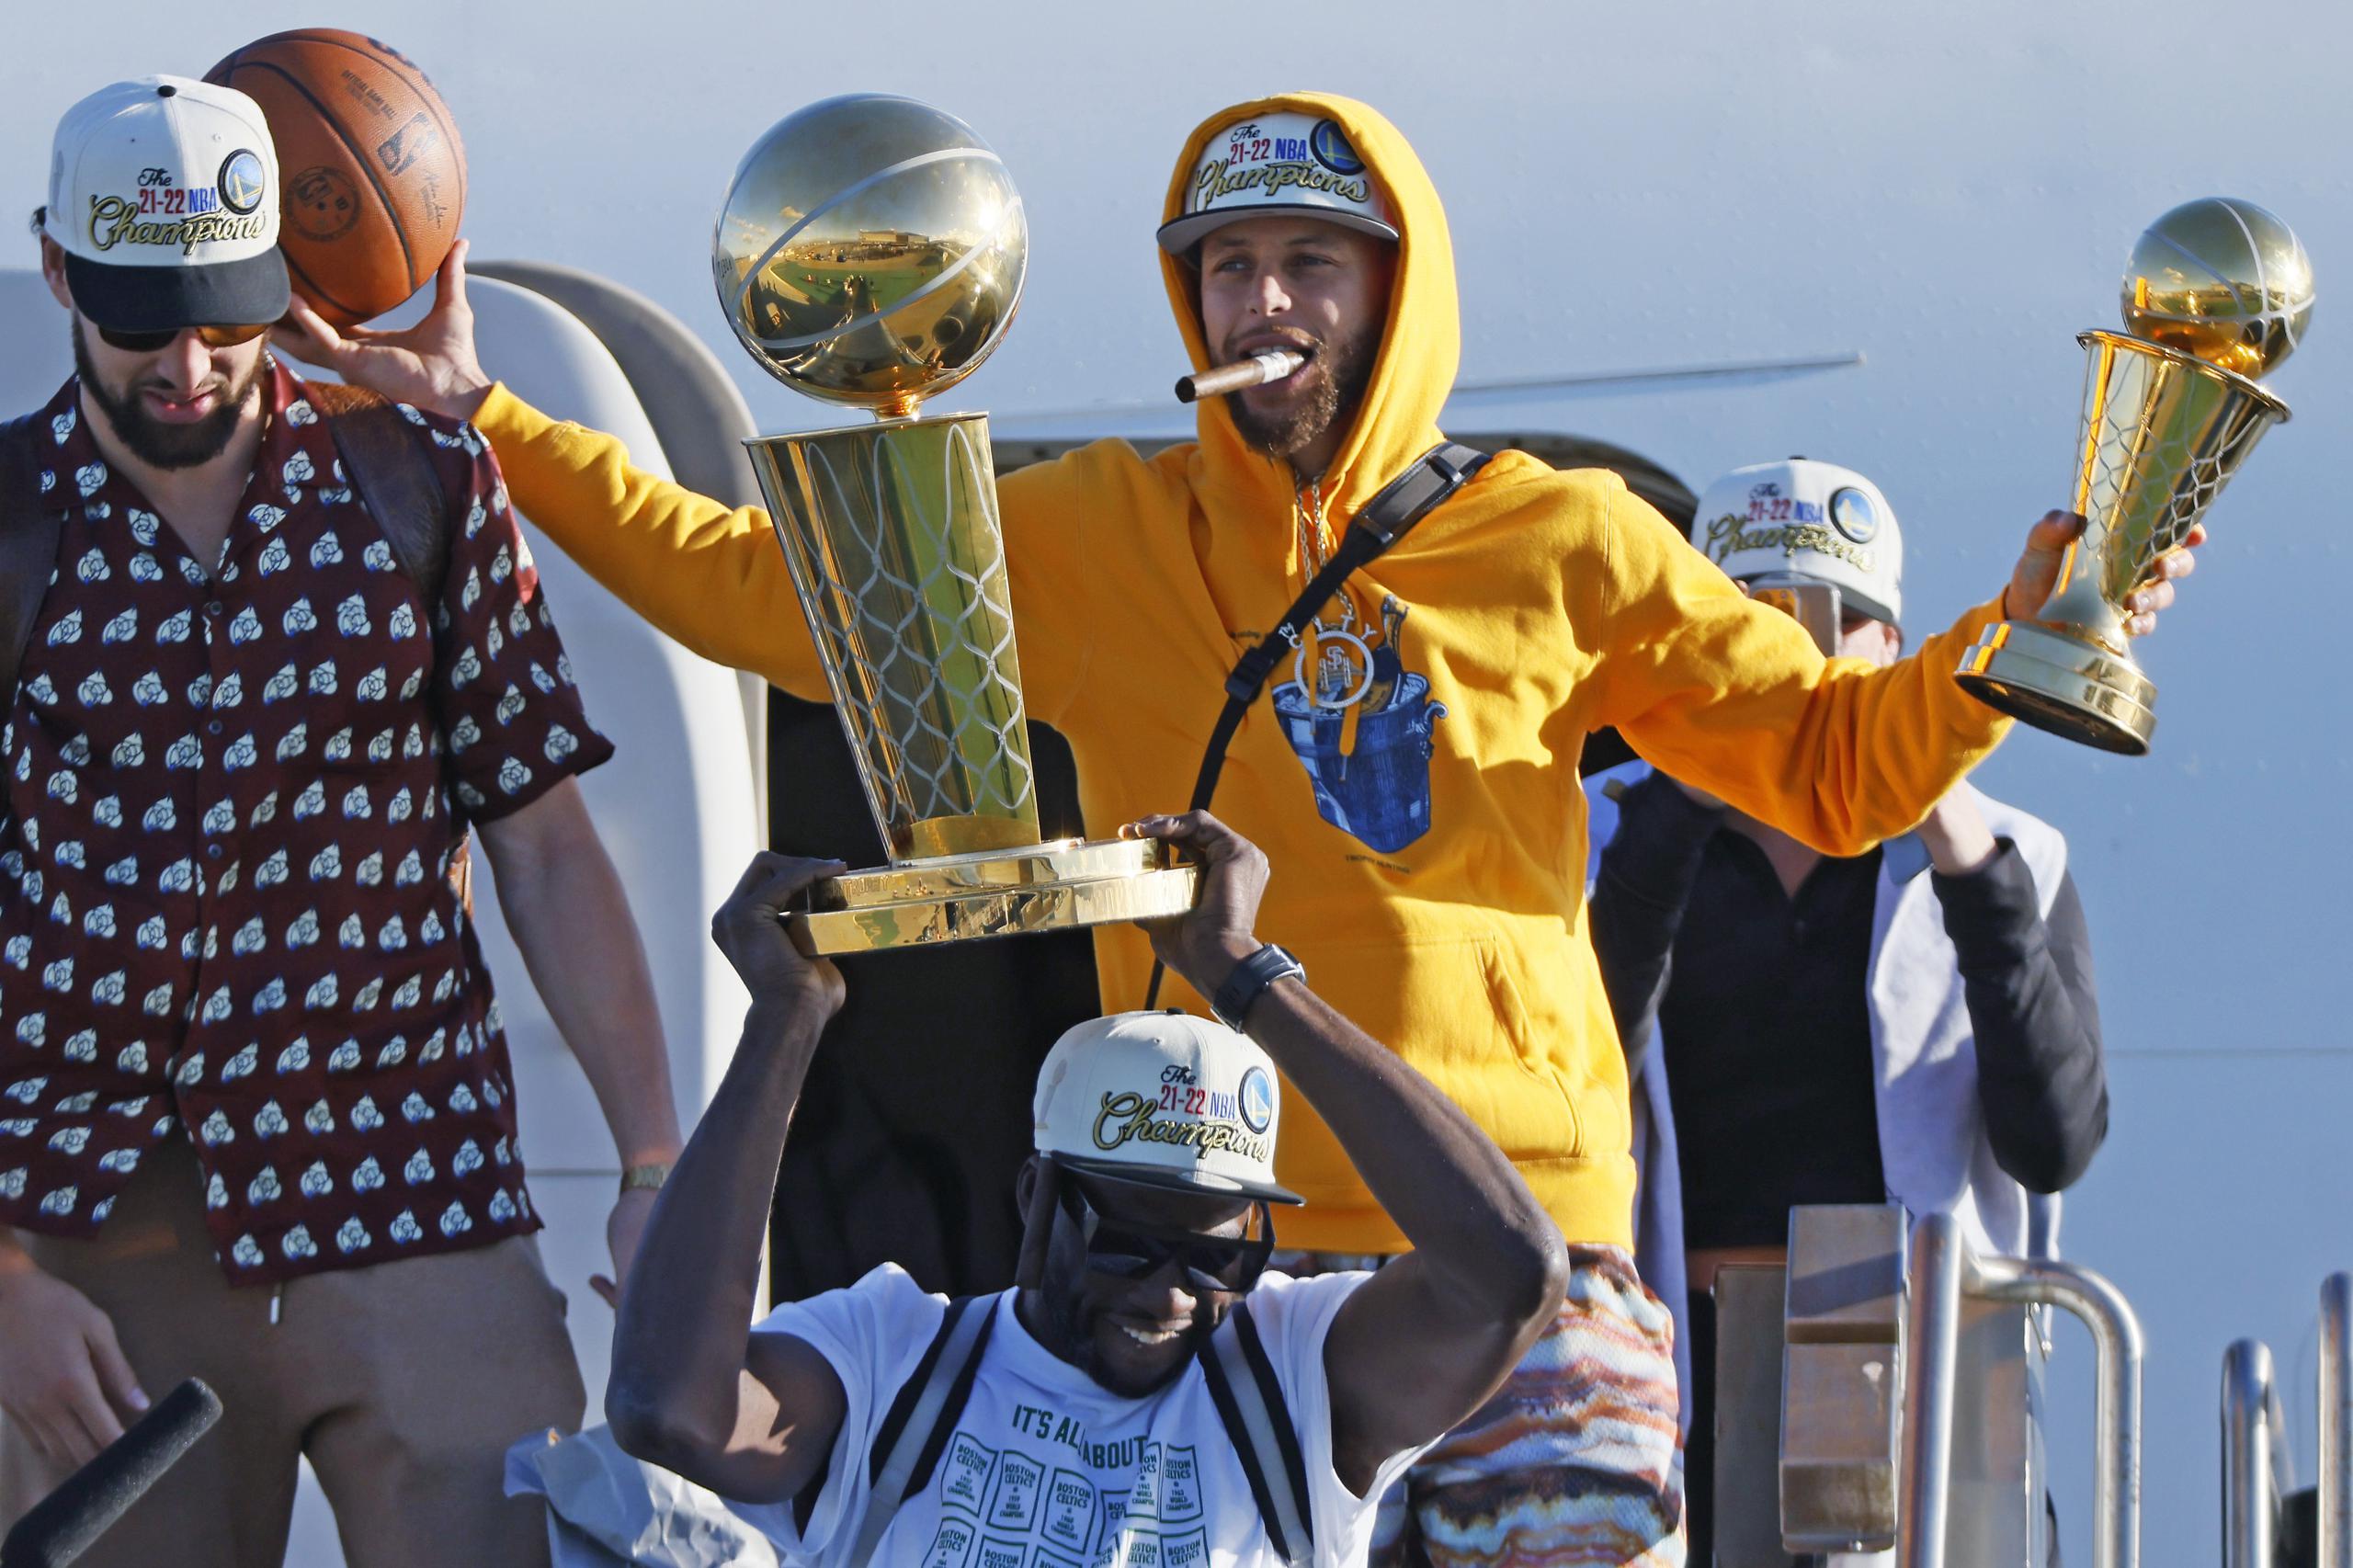 Los Warriors de Golden State, incluido Stephen Curry, sosteniendo su trofeo como el Más Valioso de la final de la NBA, arribaron ayer al aeropuerto de San Francisco tras derrotar el jueves a los Celtics de Boston.